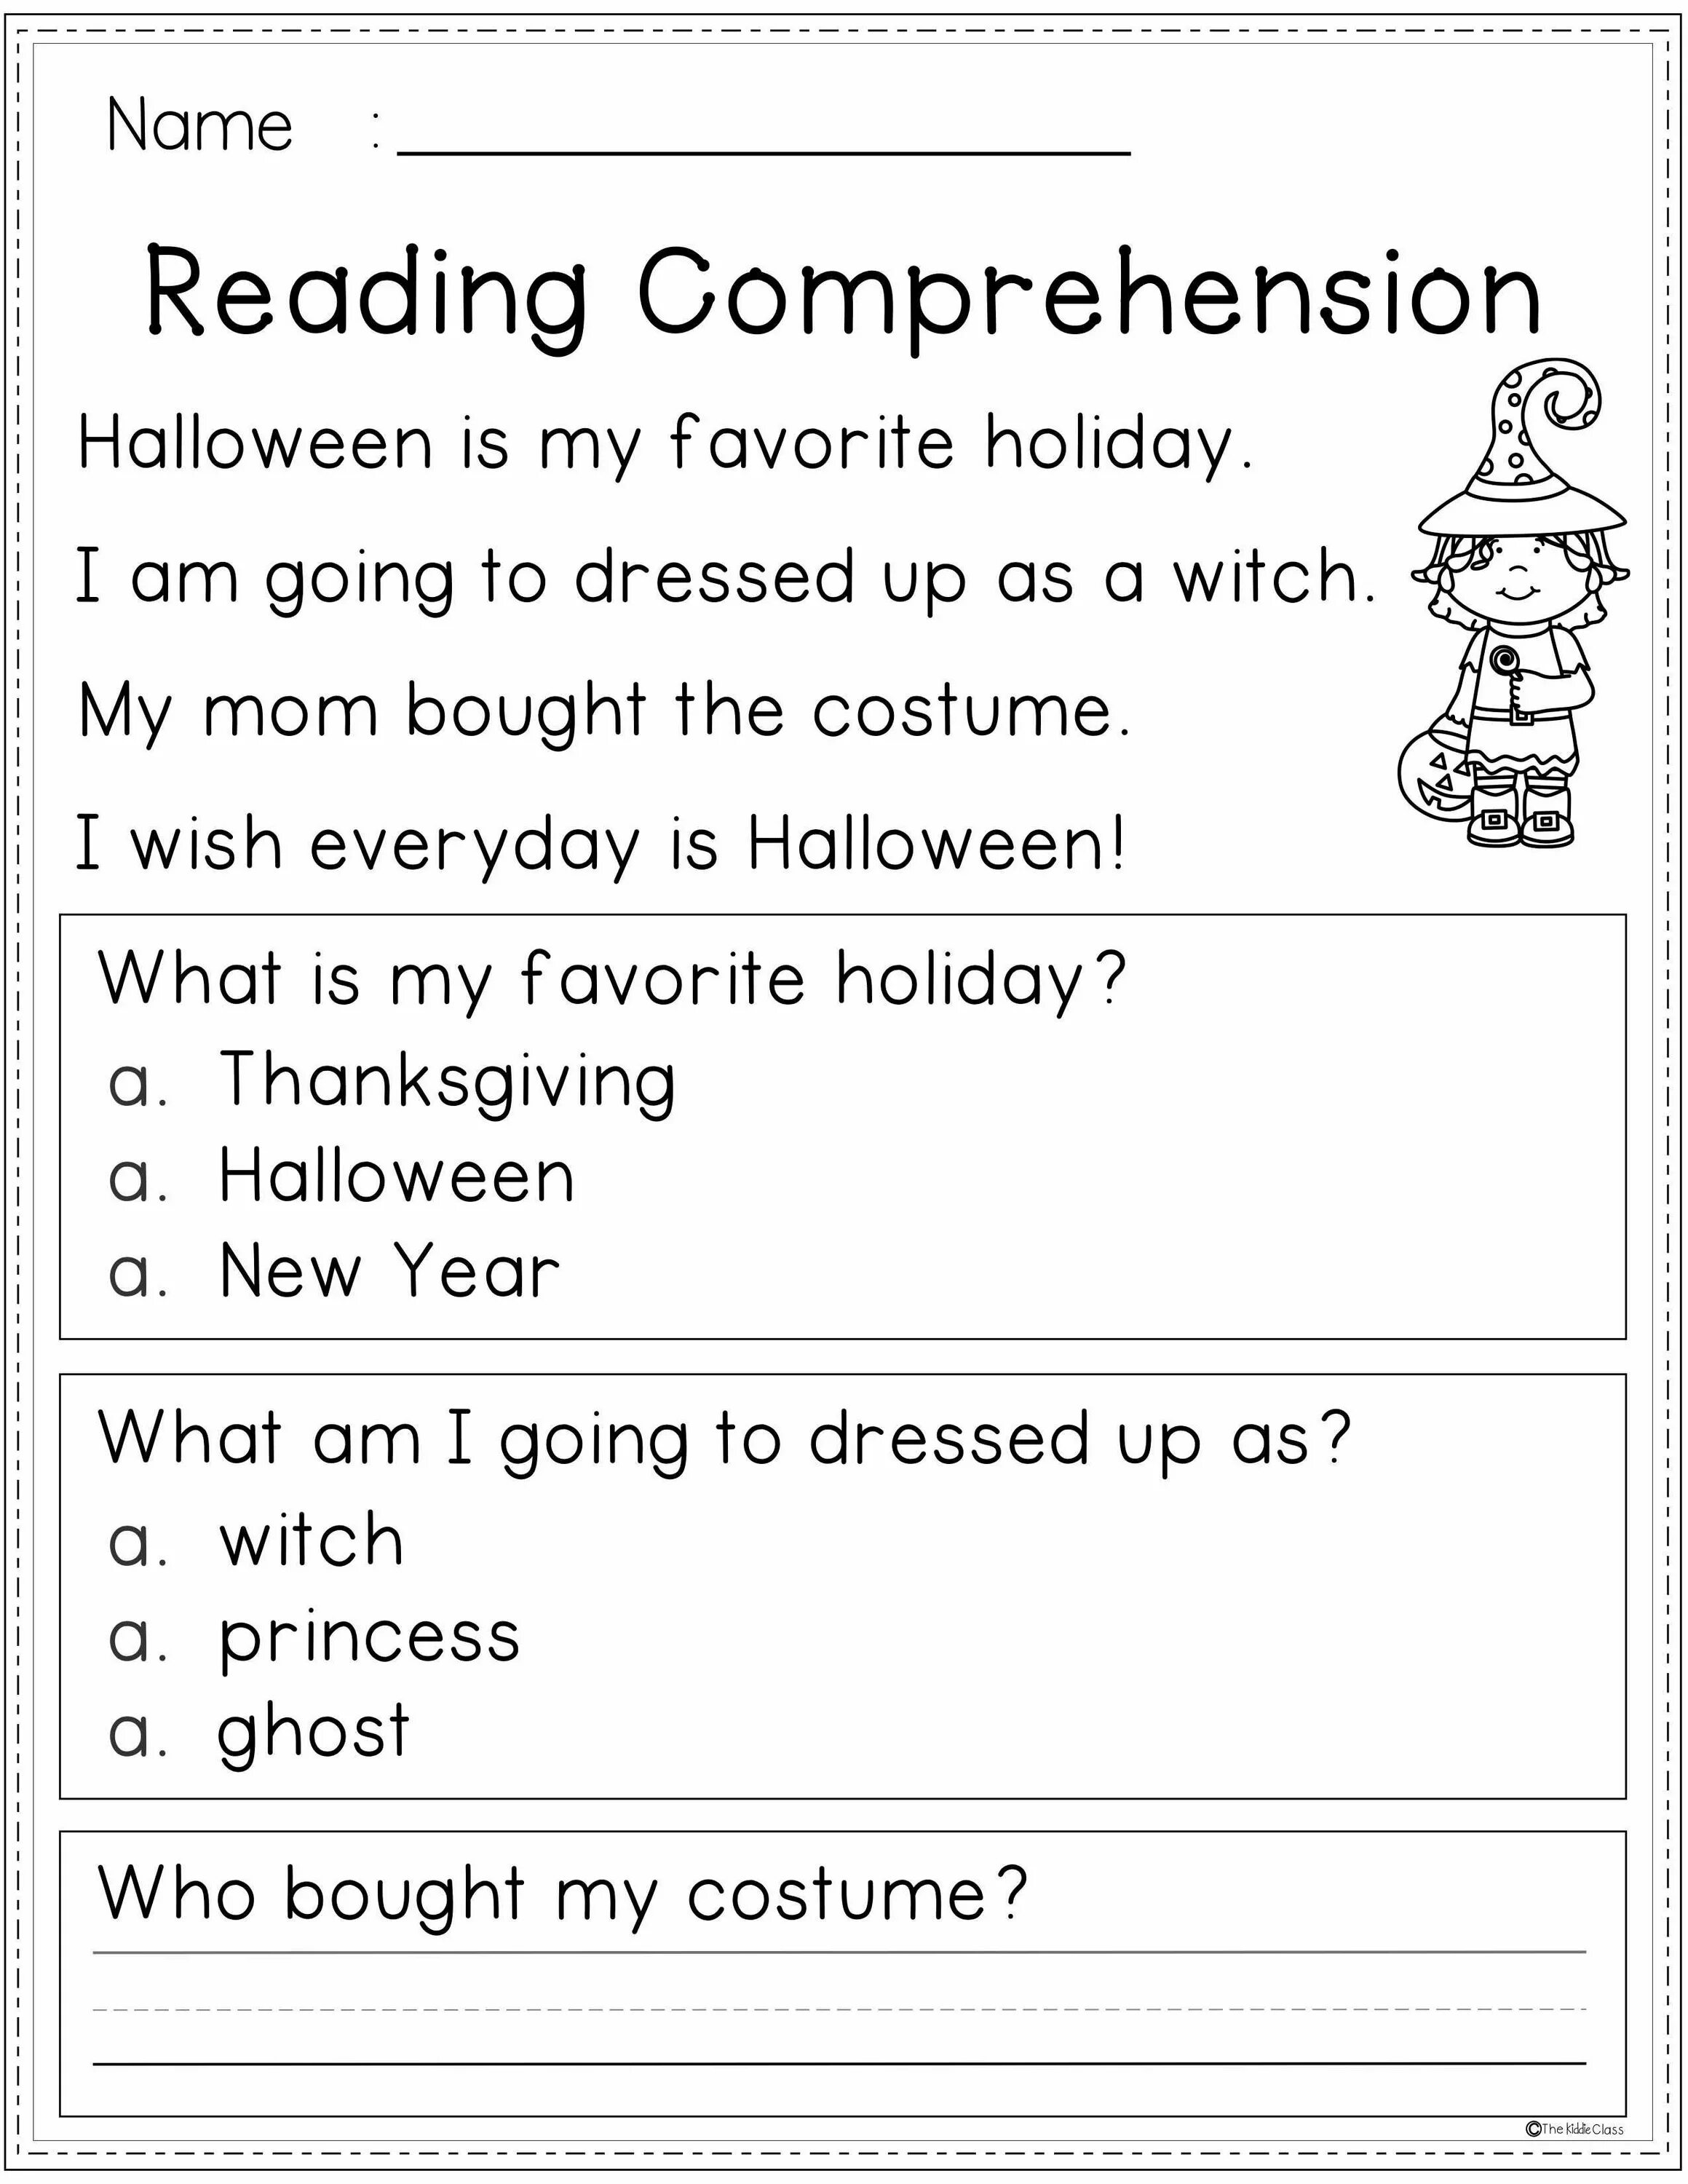 Английский 2 reading Comprehension. Reading Comprehension 4 класс. Comprehension reading в английском языке. Reading Comprehension 2 класс.